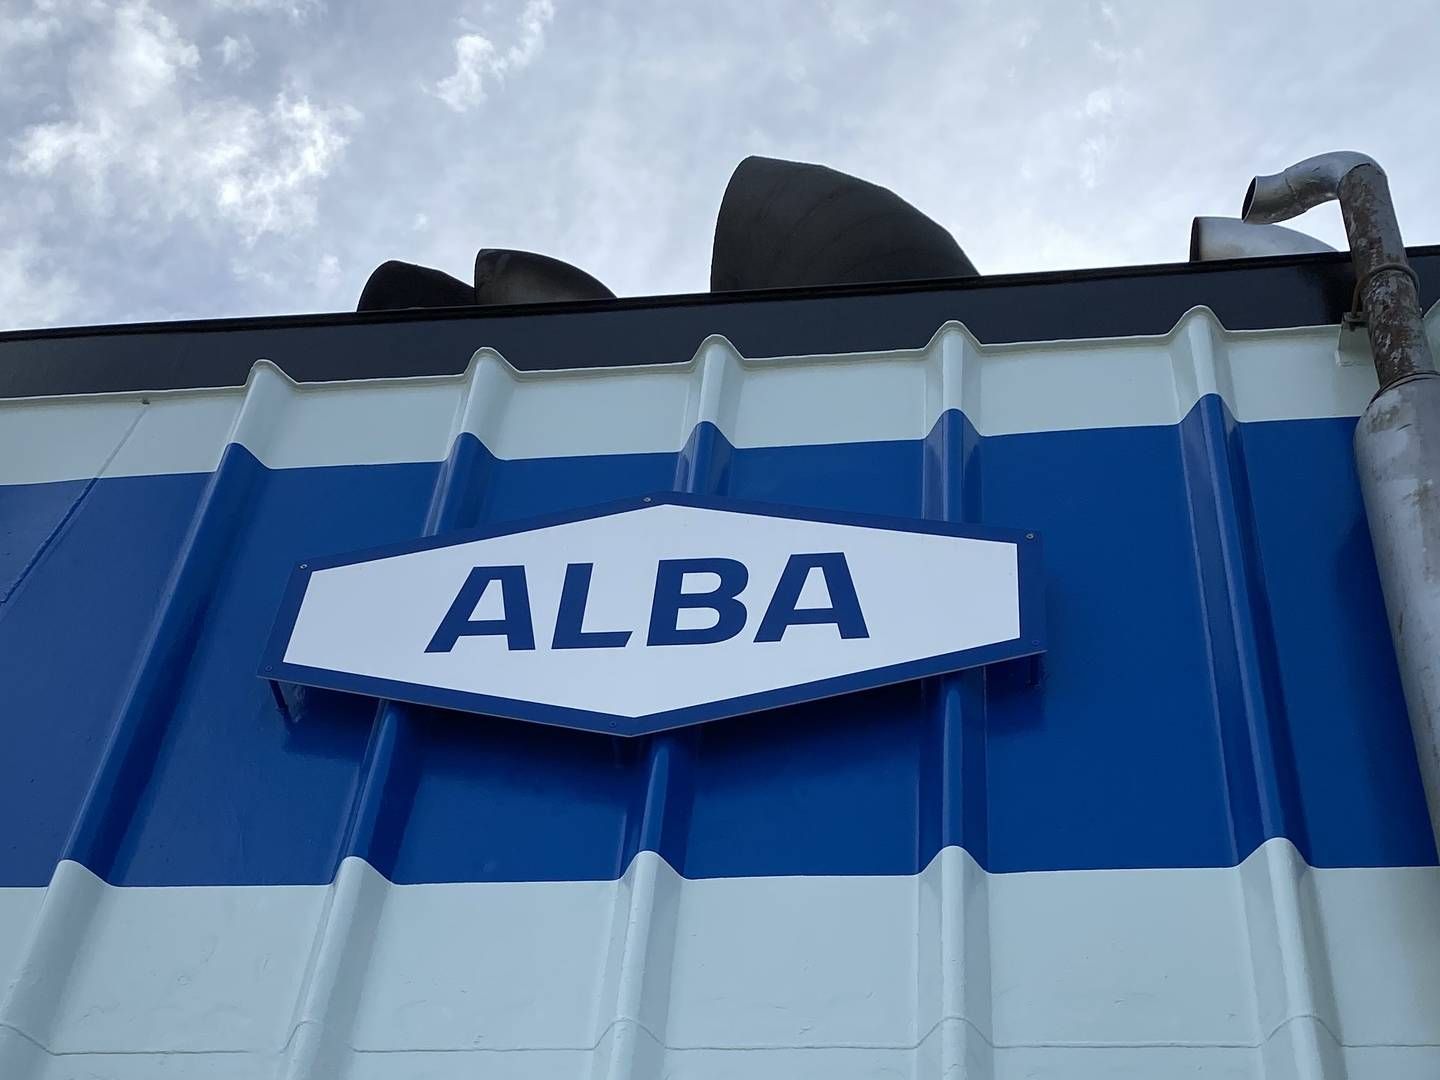 Alba Tankers har sit hovedkontor i Aalborg og opstod som selvstændigt selskab ud af OW Bunkers konkurs i 2014. | Foto: Alba Tankers